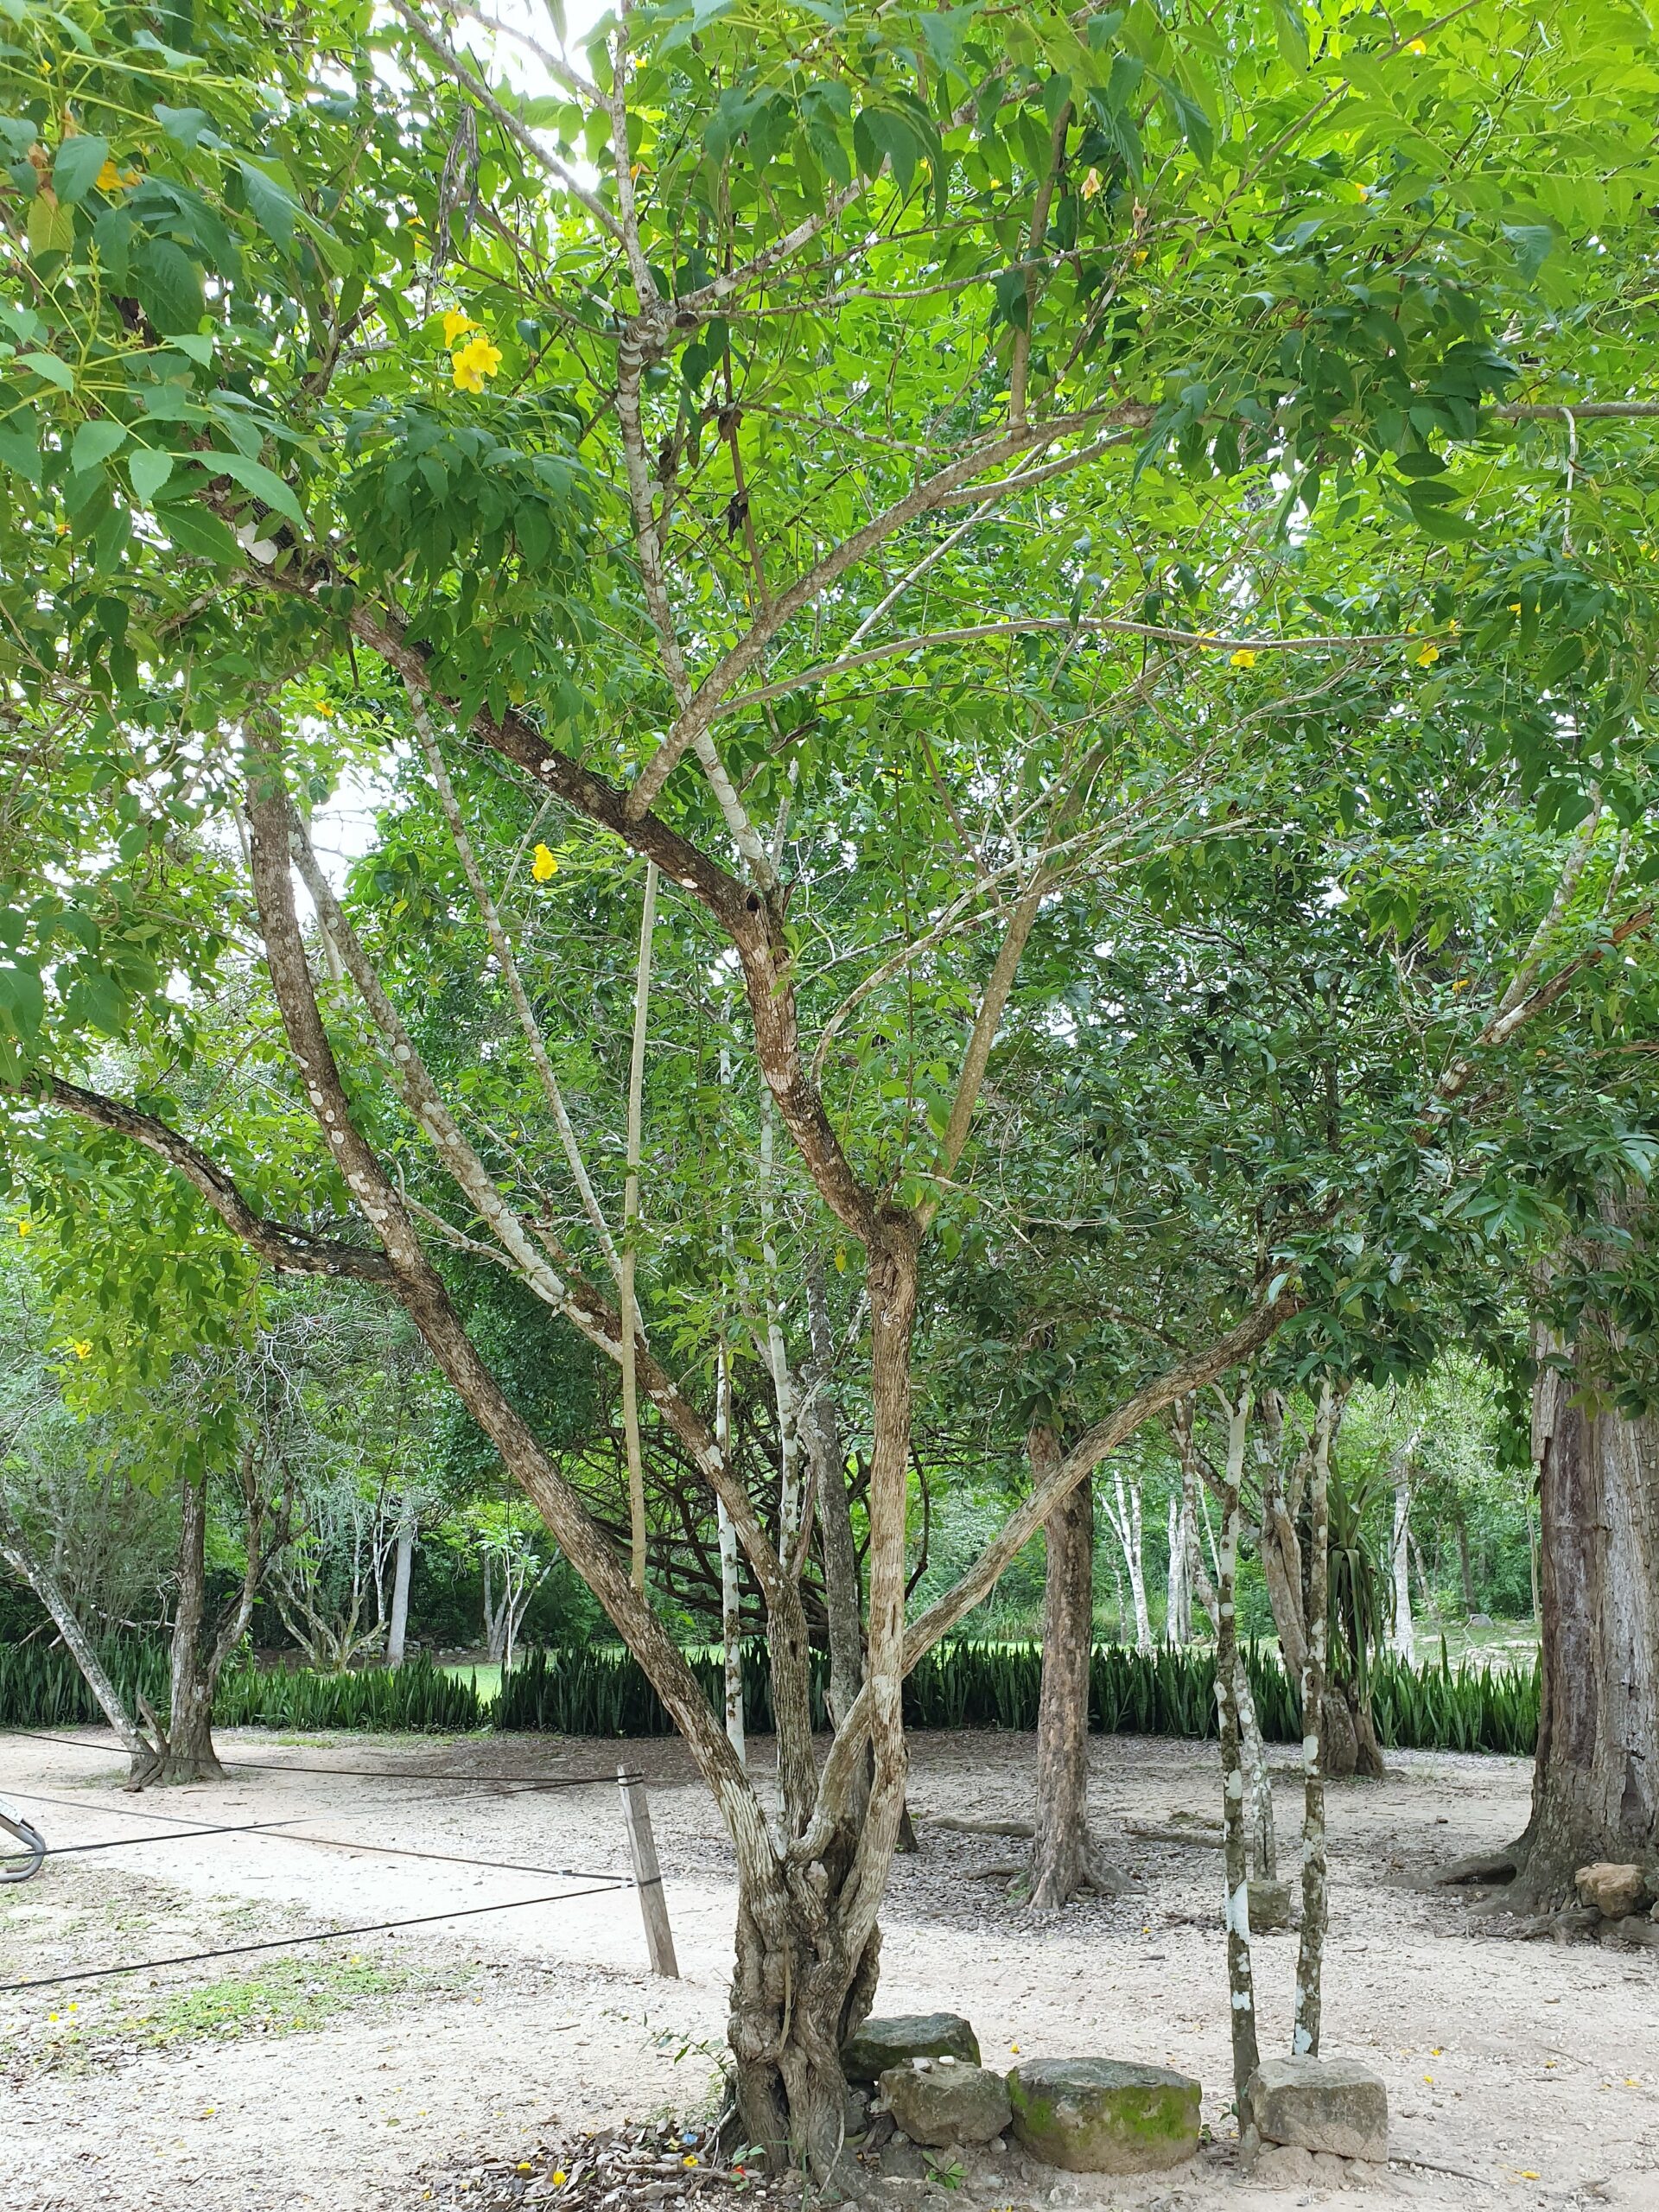 State tree of Piauí